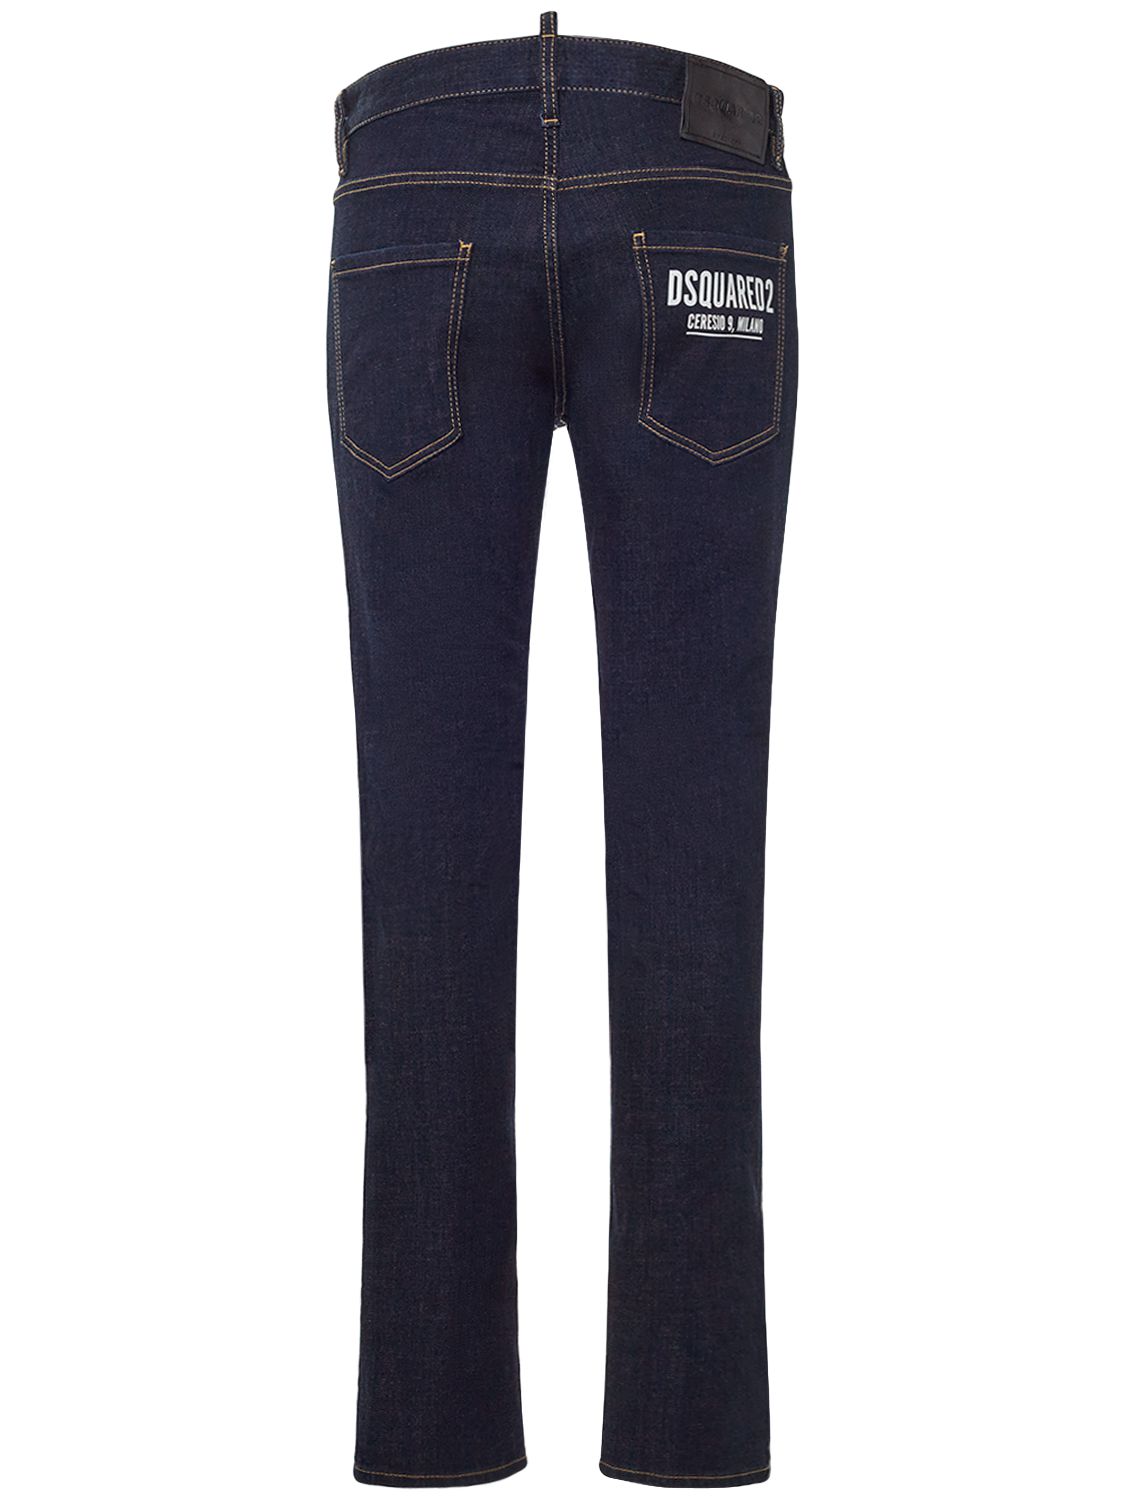 Jeans Ceresio 9 Cool Guy In Denim Di Cotone - DSQUARED2 - Modalova